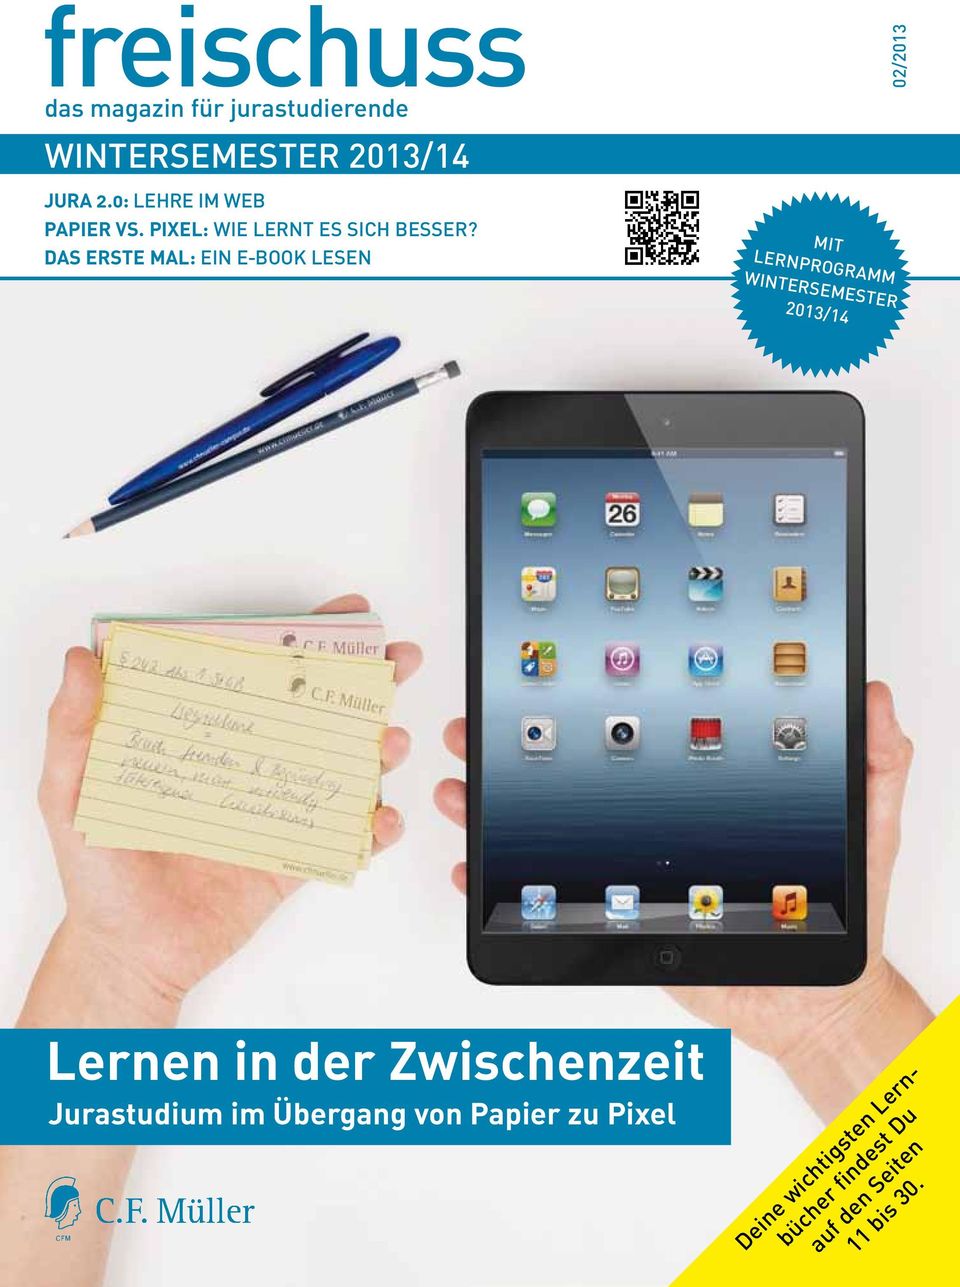 Das erste Mal: Ein e-book lesen mit Lernprogramm Wintersemester 2013/14 Lernen in der